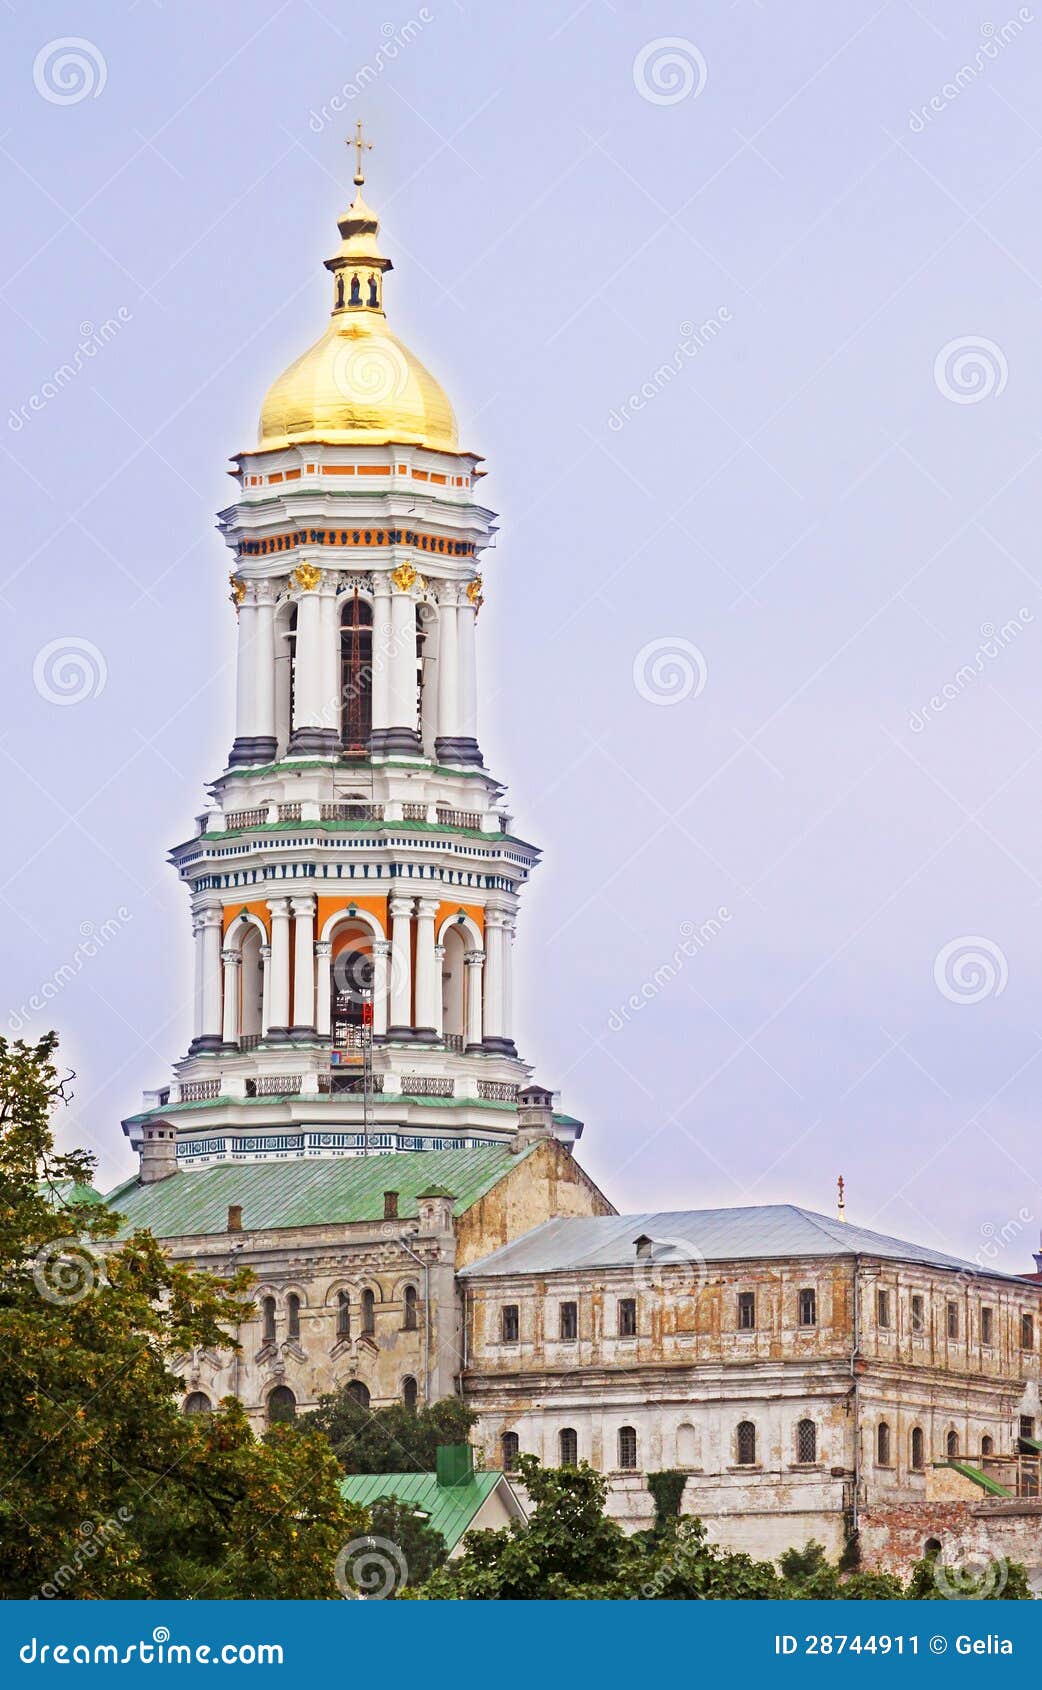 Großer Lavra Glockenturm. Kiew Pechersk Lavra oder Kiew-Kloster der Höhlen ist ein historisches orthodoxes christliches Kloster. Kiew Pechersk Lavra ist UNESCO-Welterbsite. Kiew, Ukraine, Europa